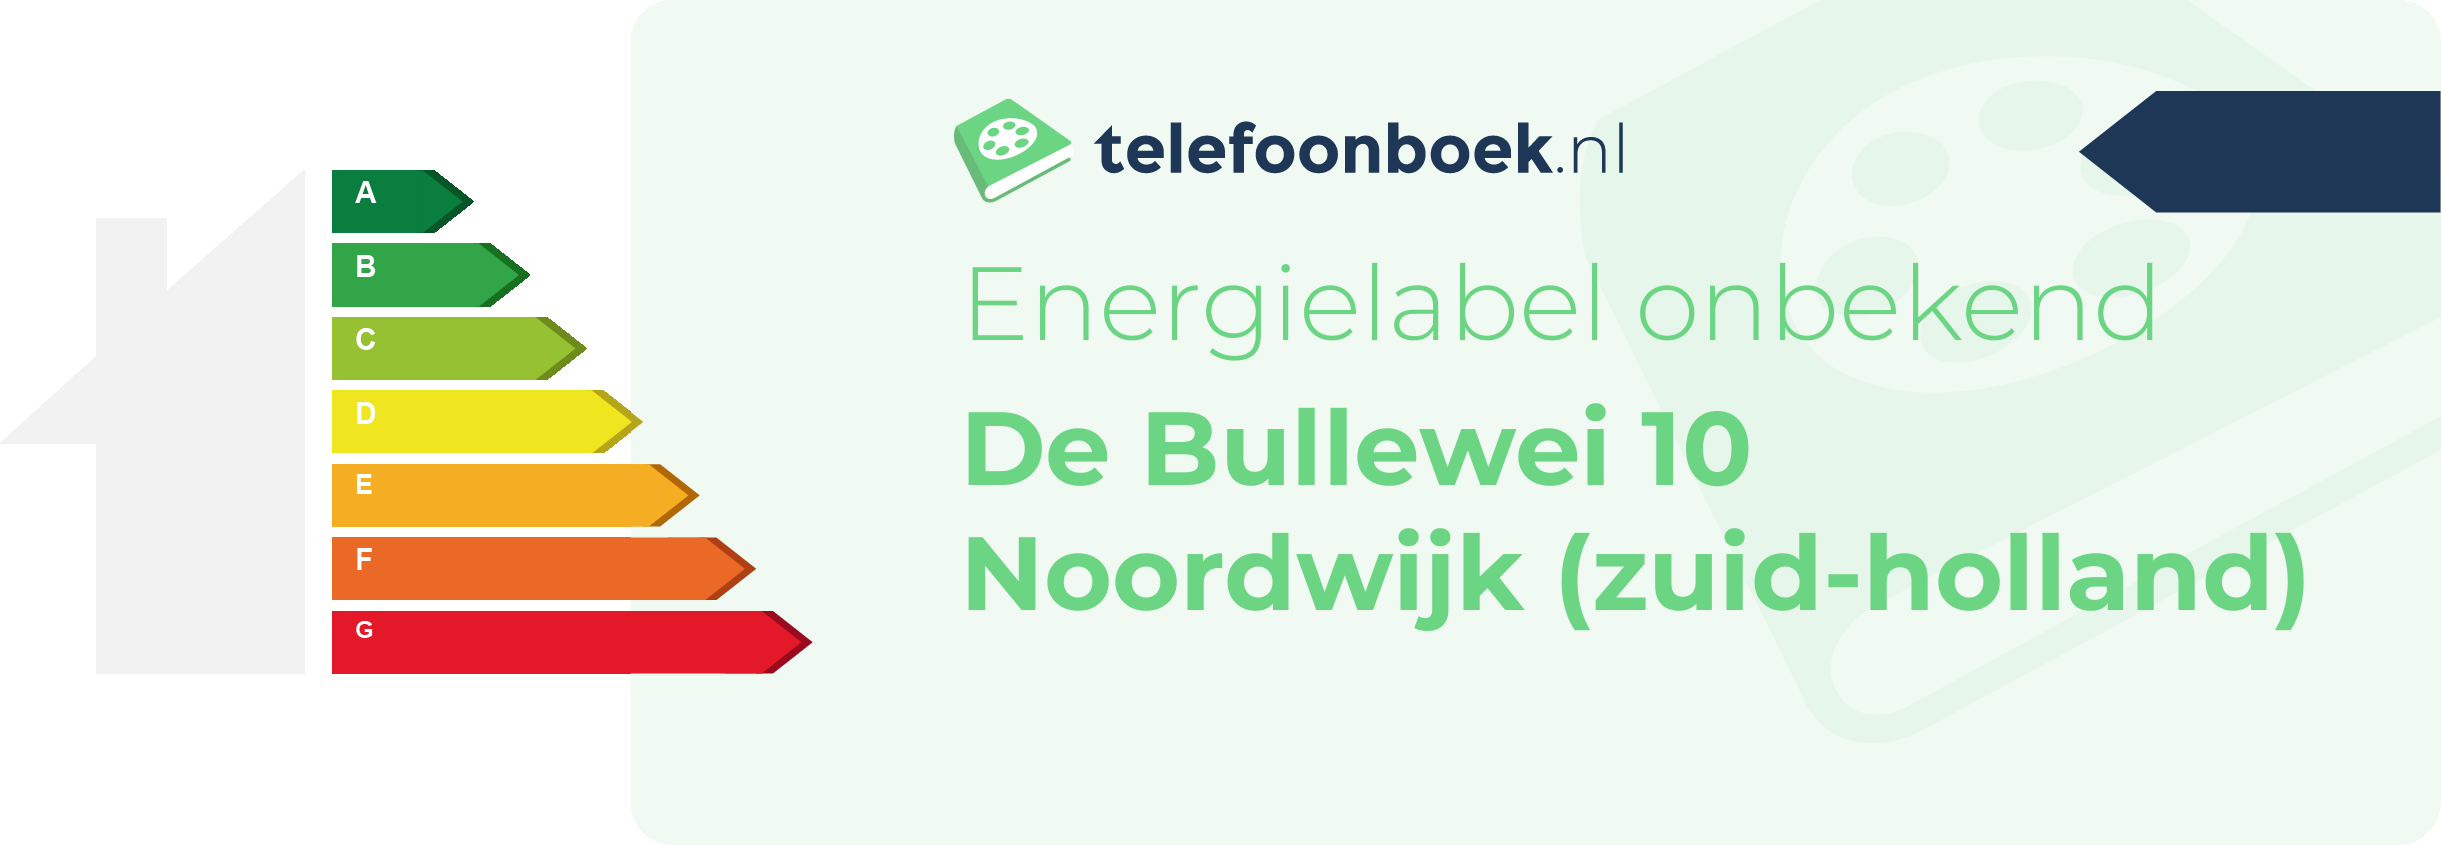 Energielabel De Bullewei 10 Noordwijk (Zuid-Holland)